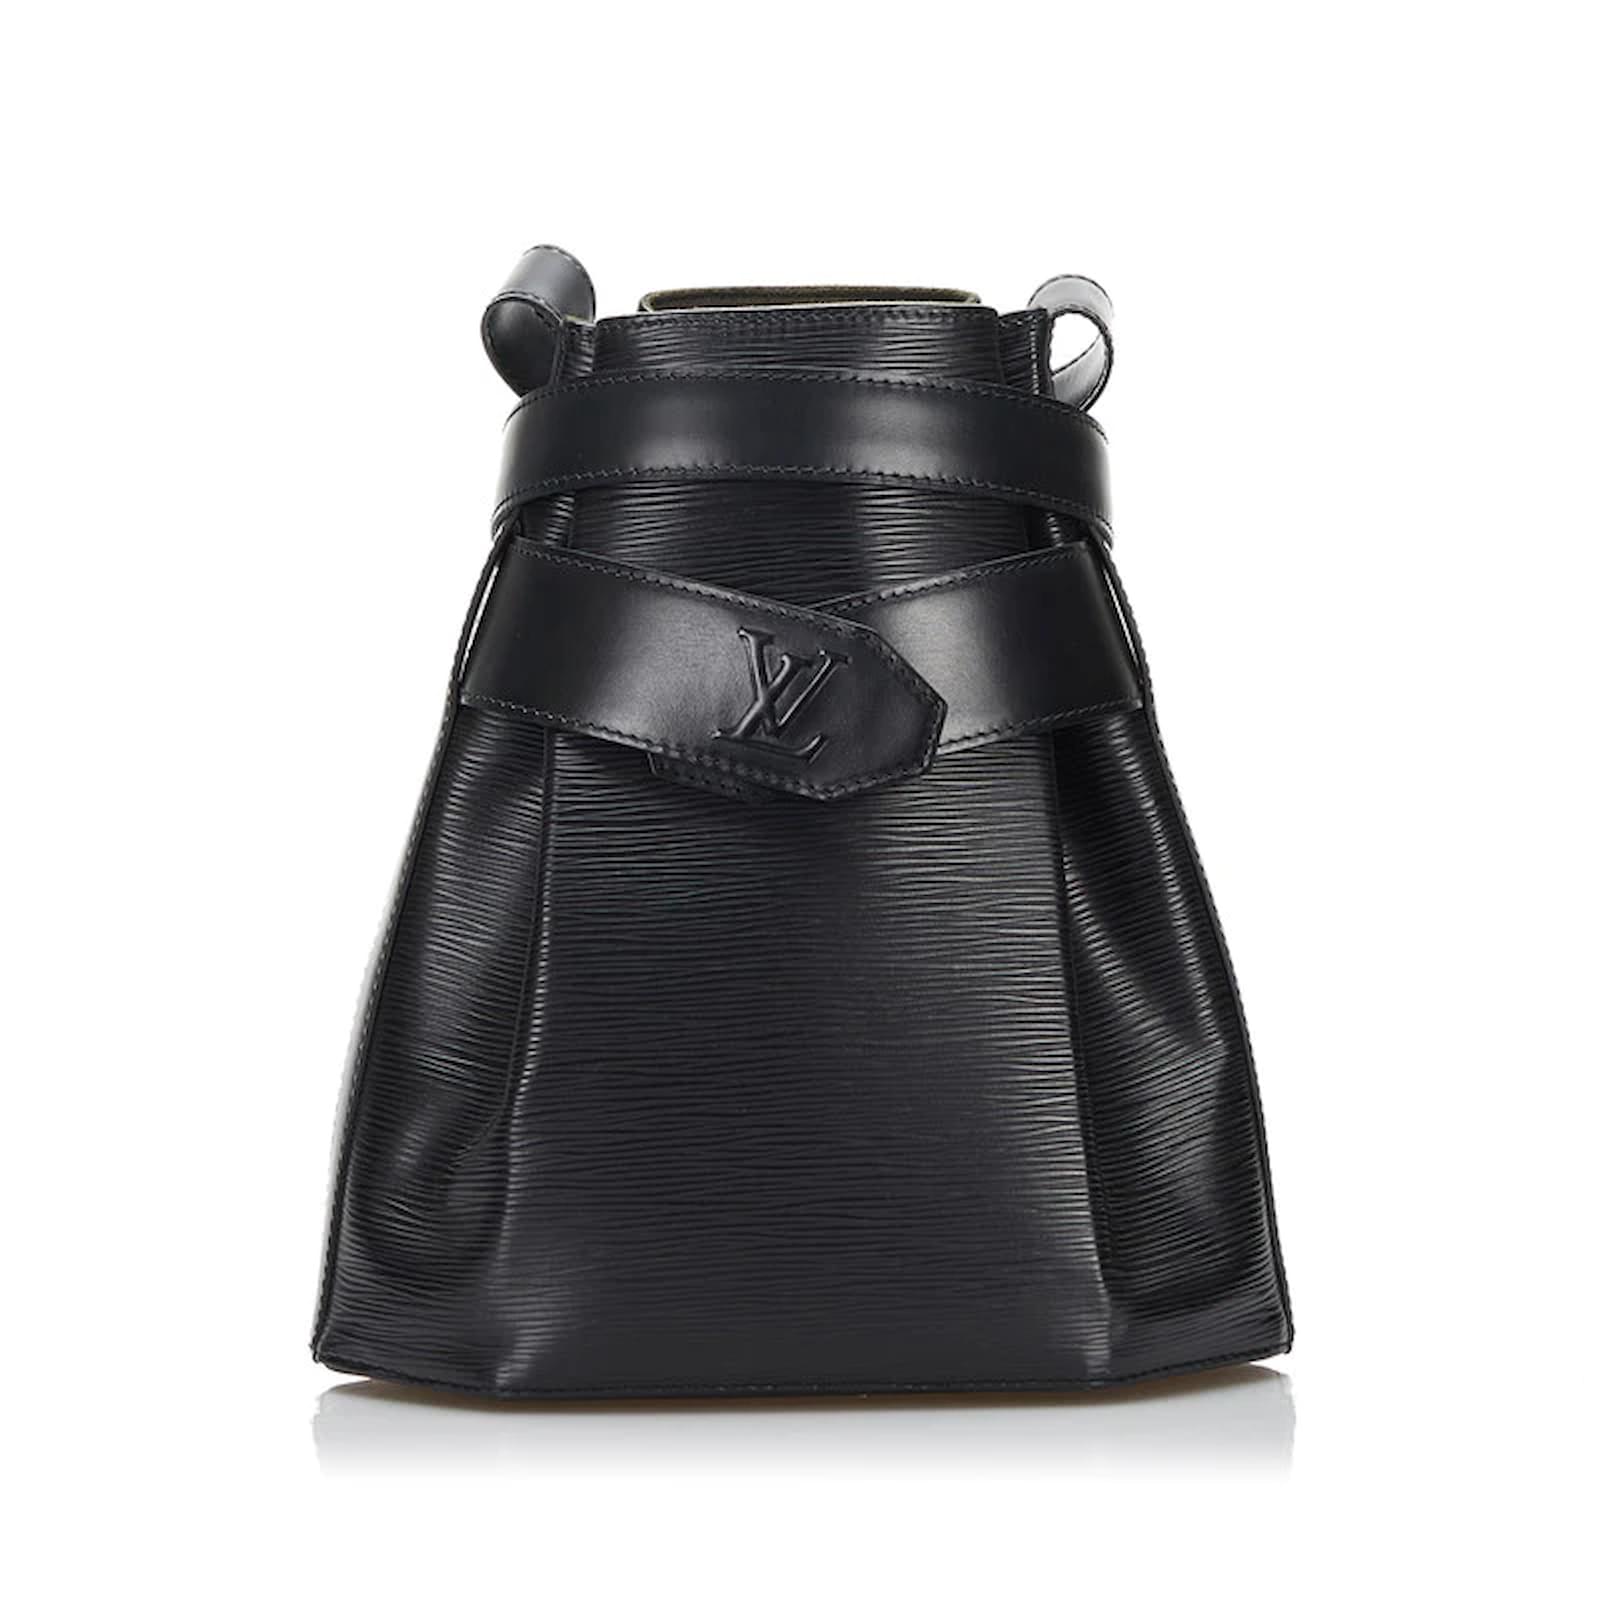 Louis Vuitton Epi Sac De Paule M80157 Black Leather Pony-style